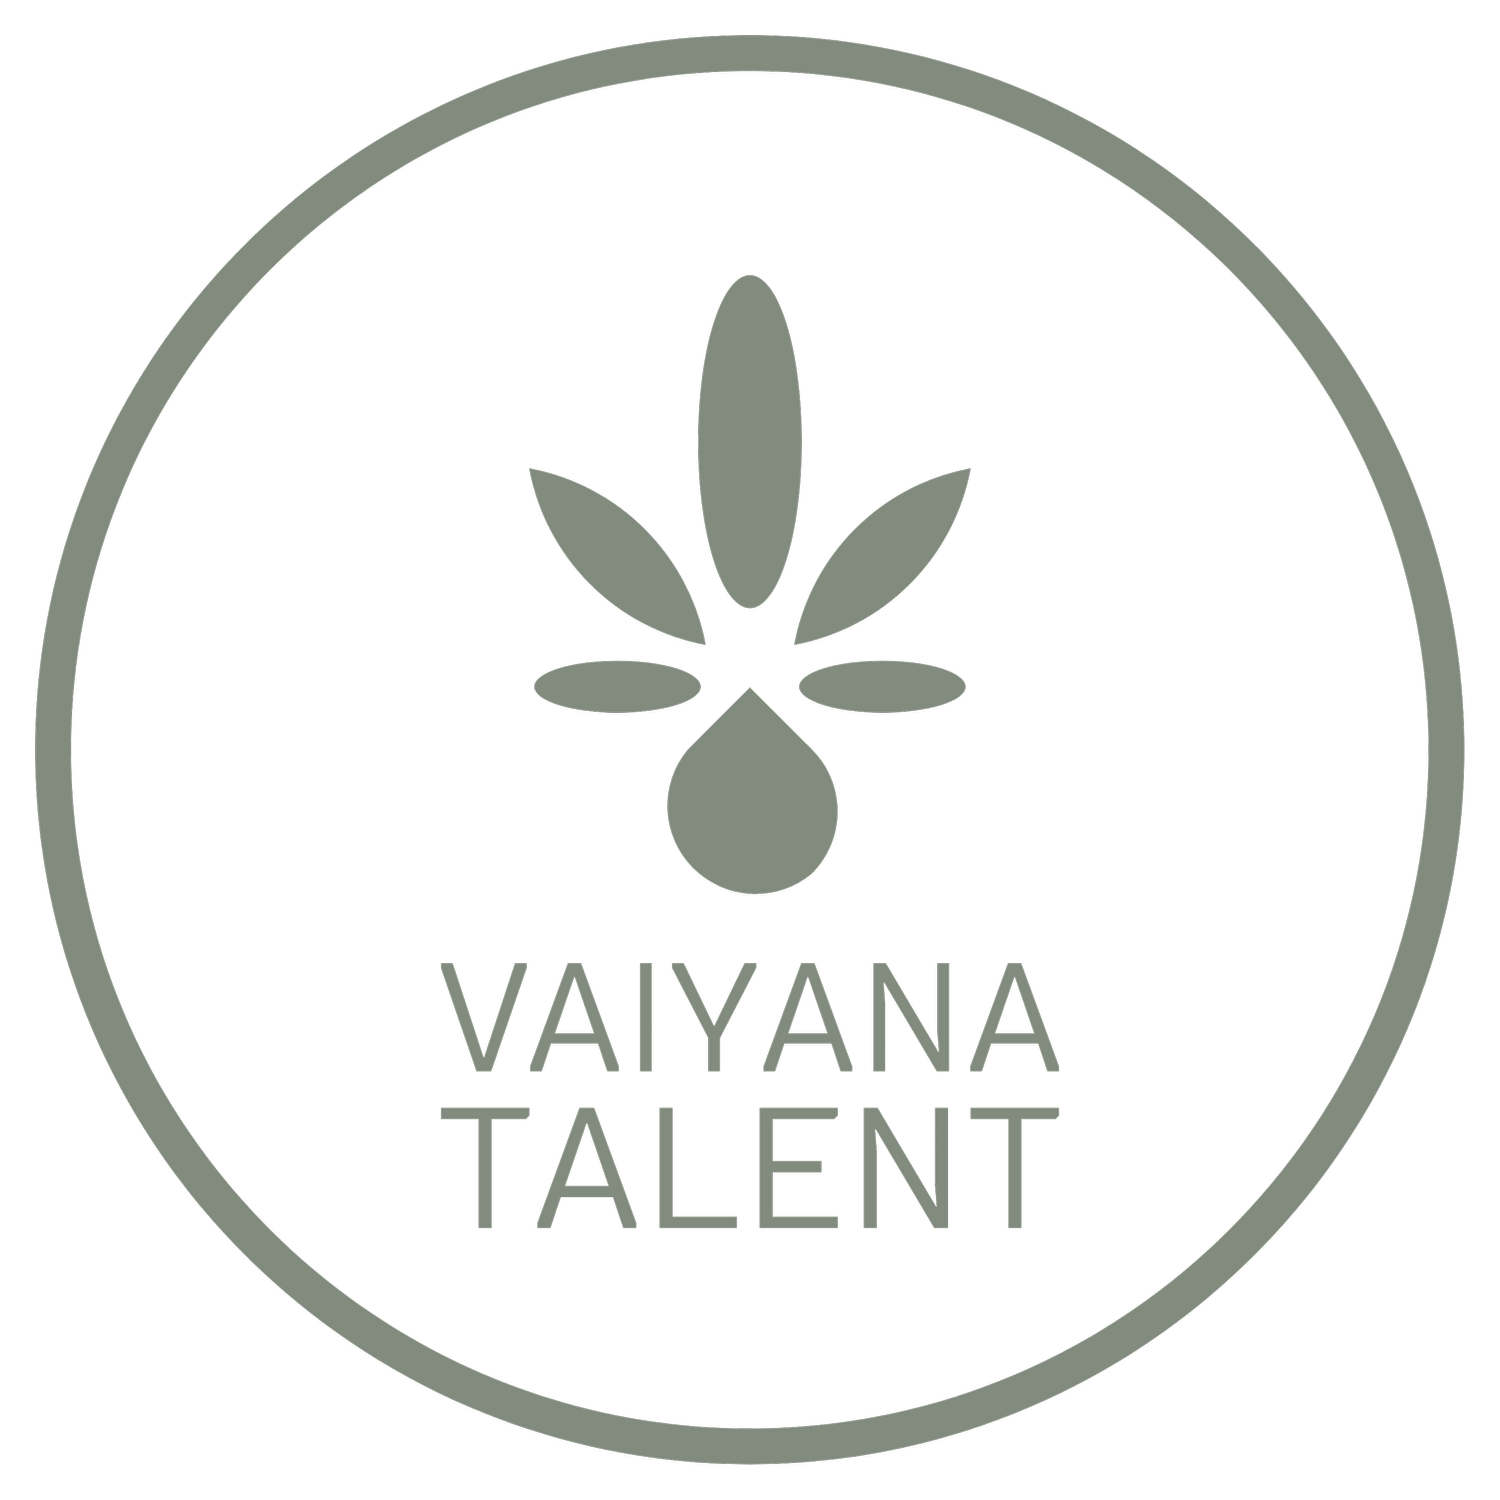 Vaiyana Talent